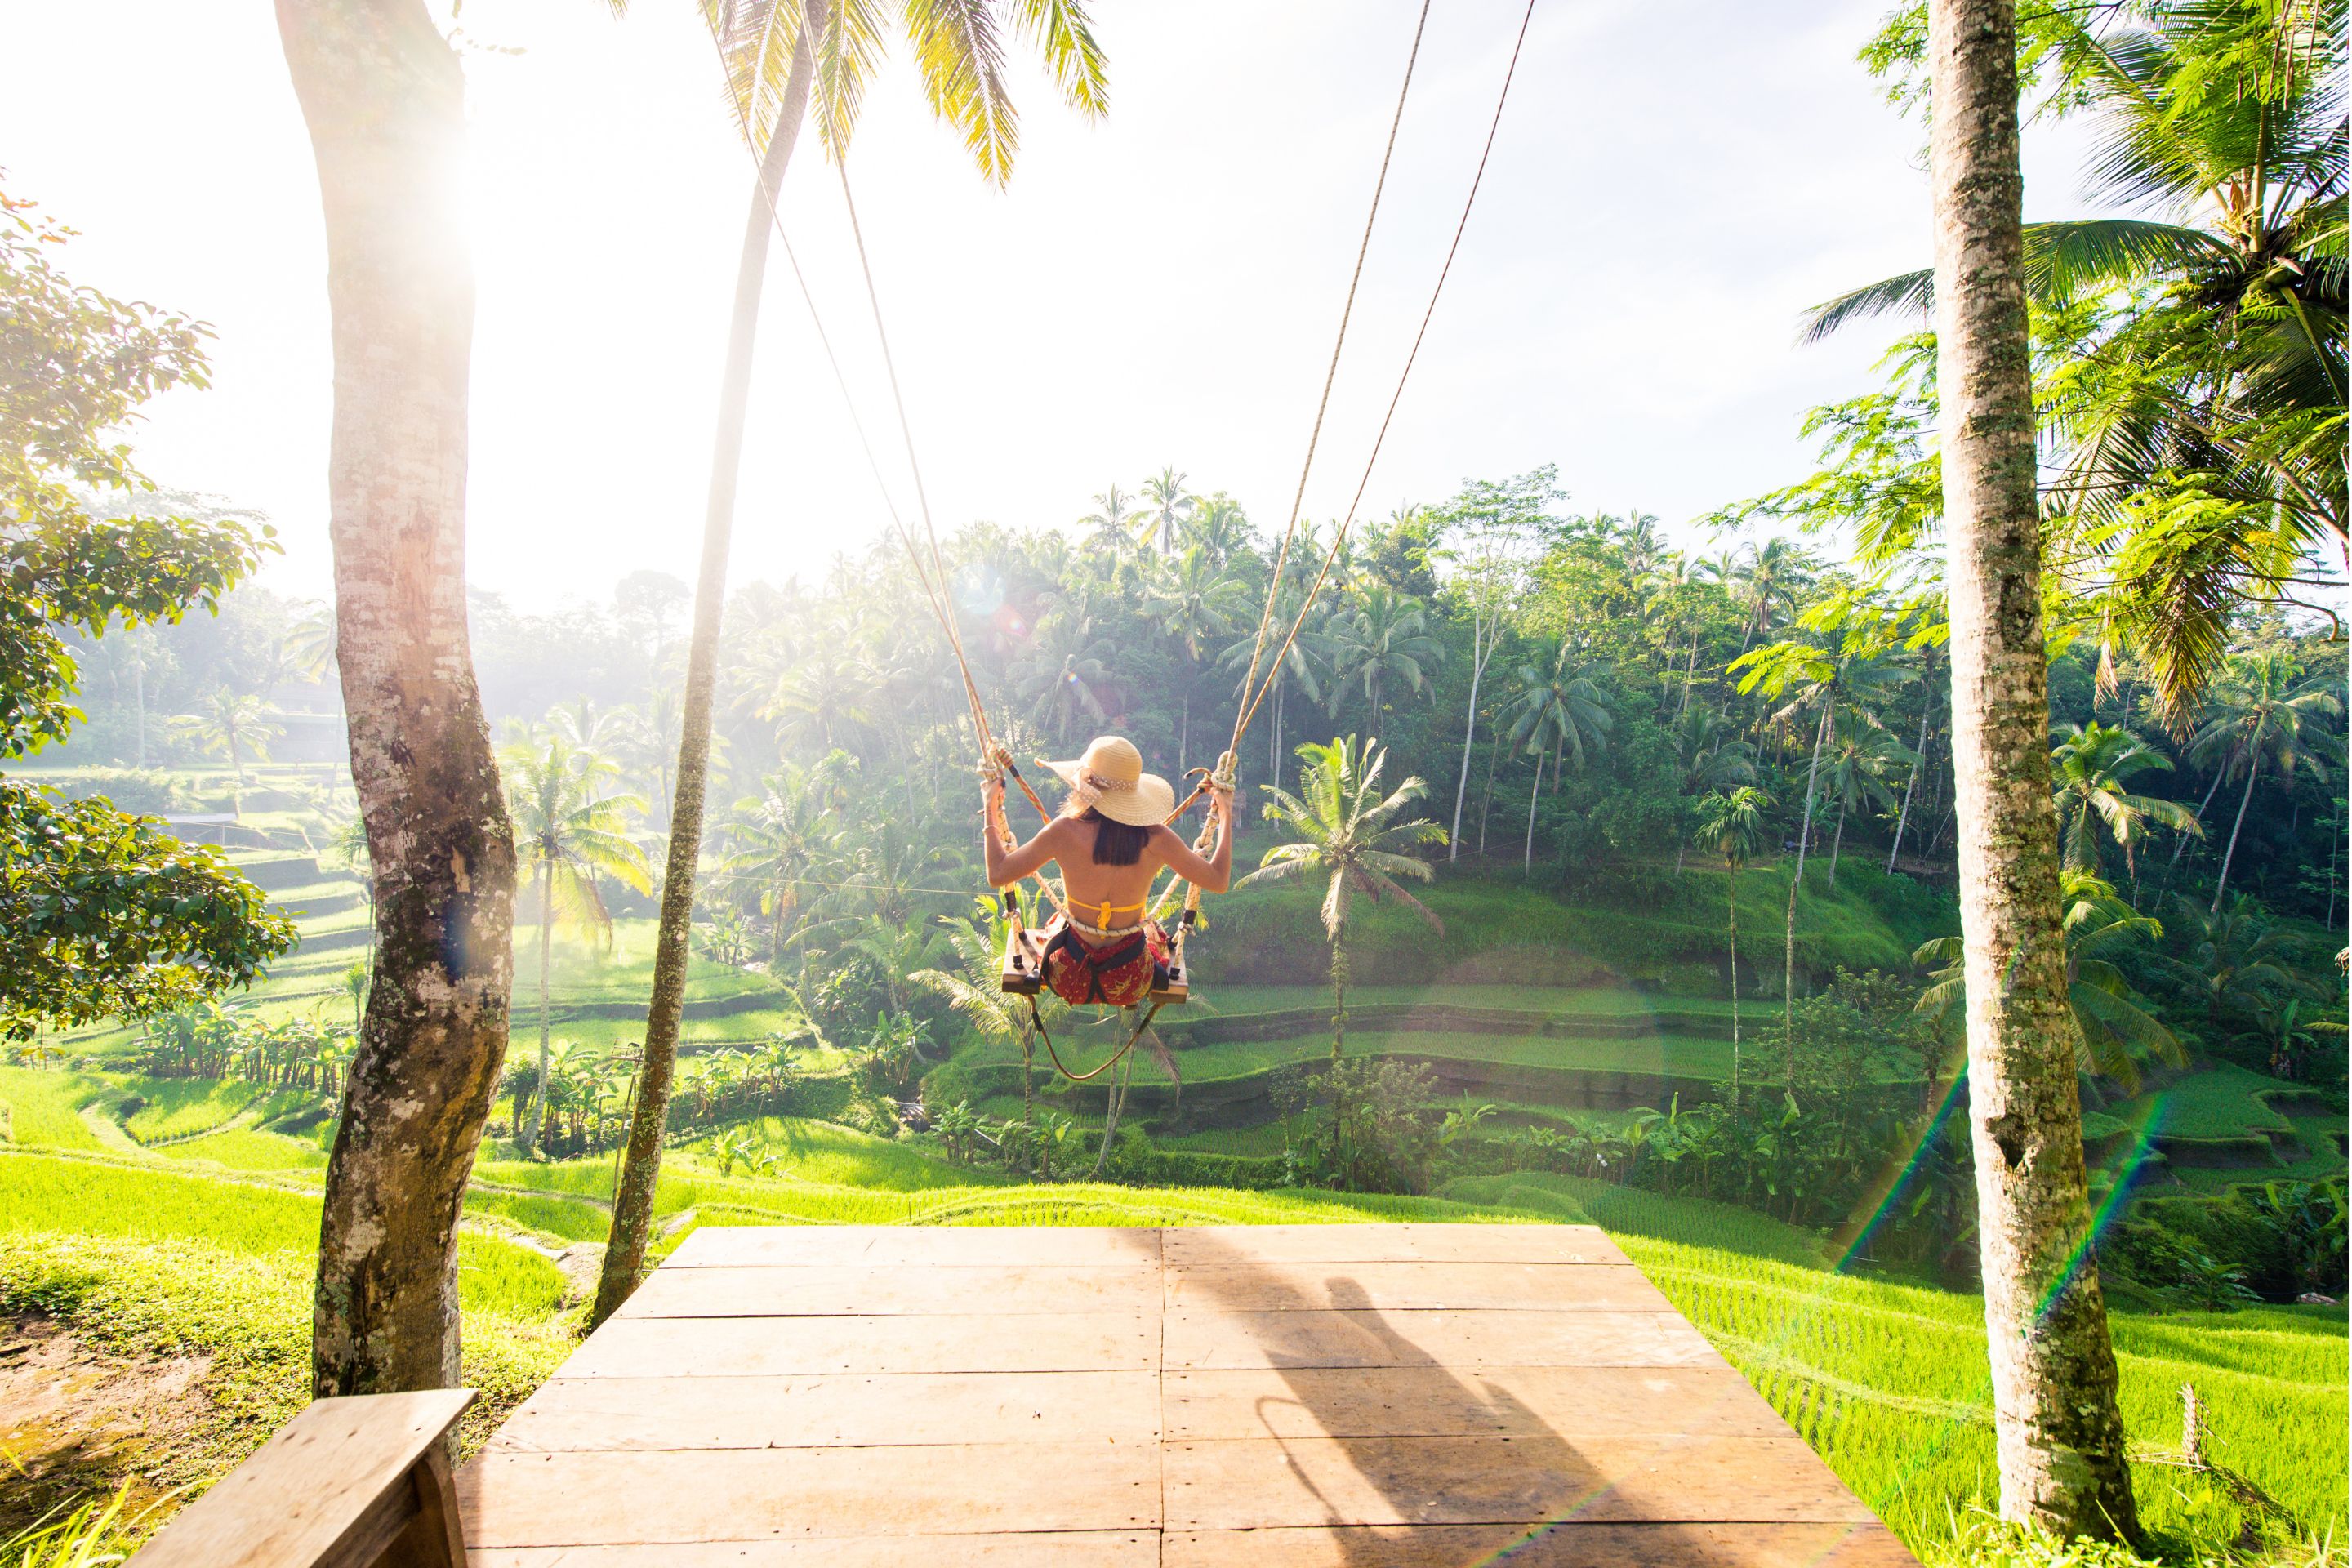 Woman swings on Bali swing